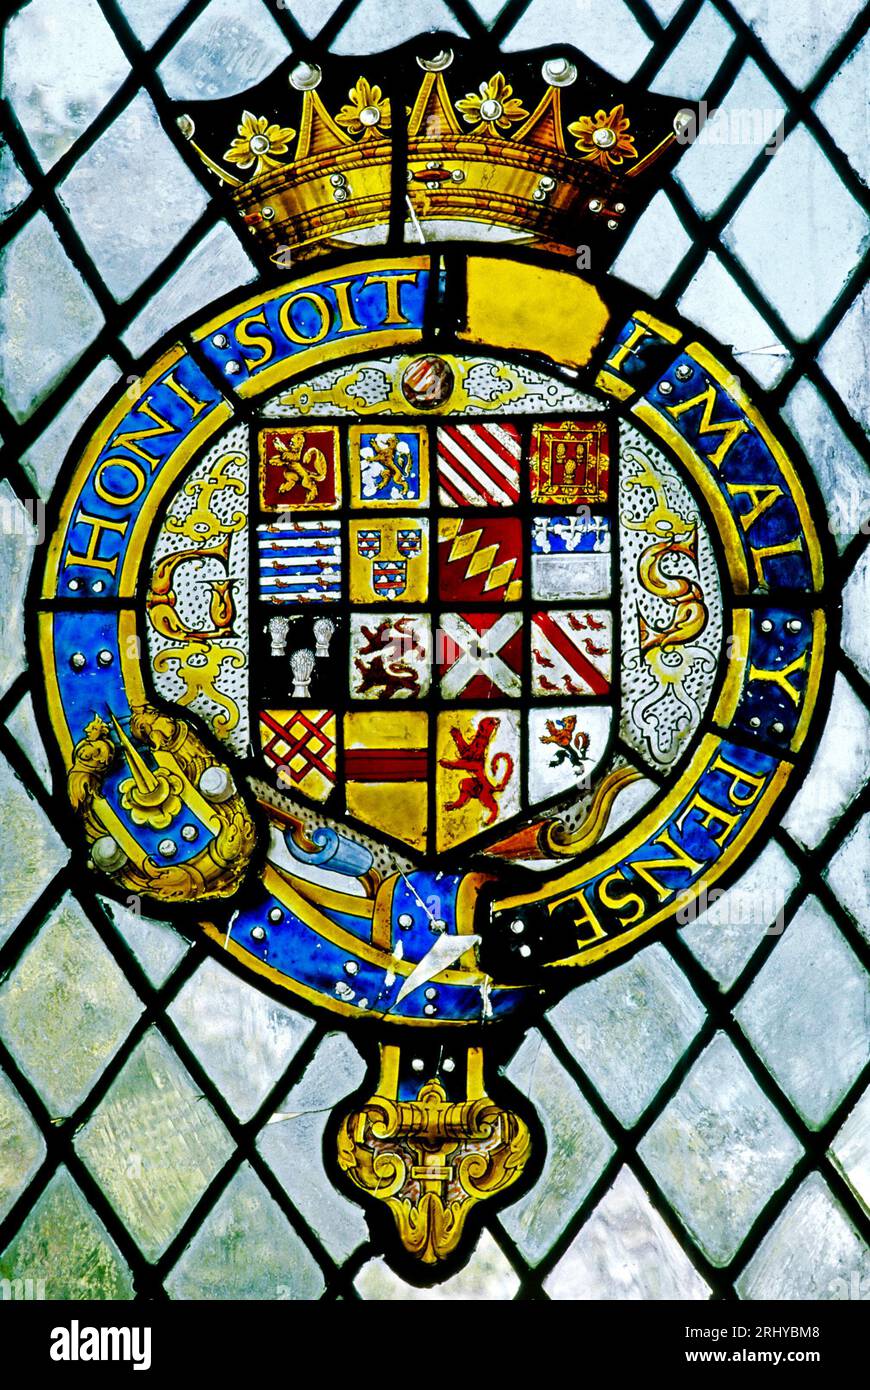 Ordre de la jarretière, héraldique, héraldique, vitrail Haddon Hall, Derbyshire, Angleterre, Royaume-Uni Banque D'Images